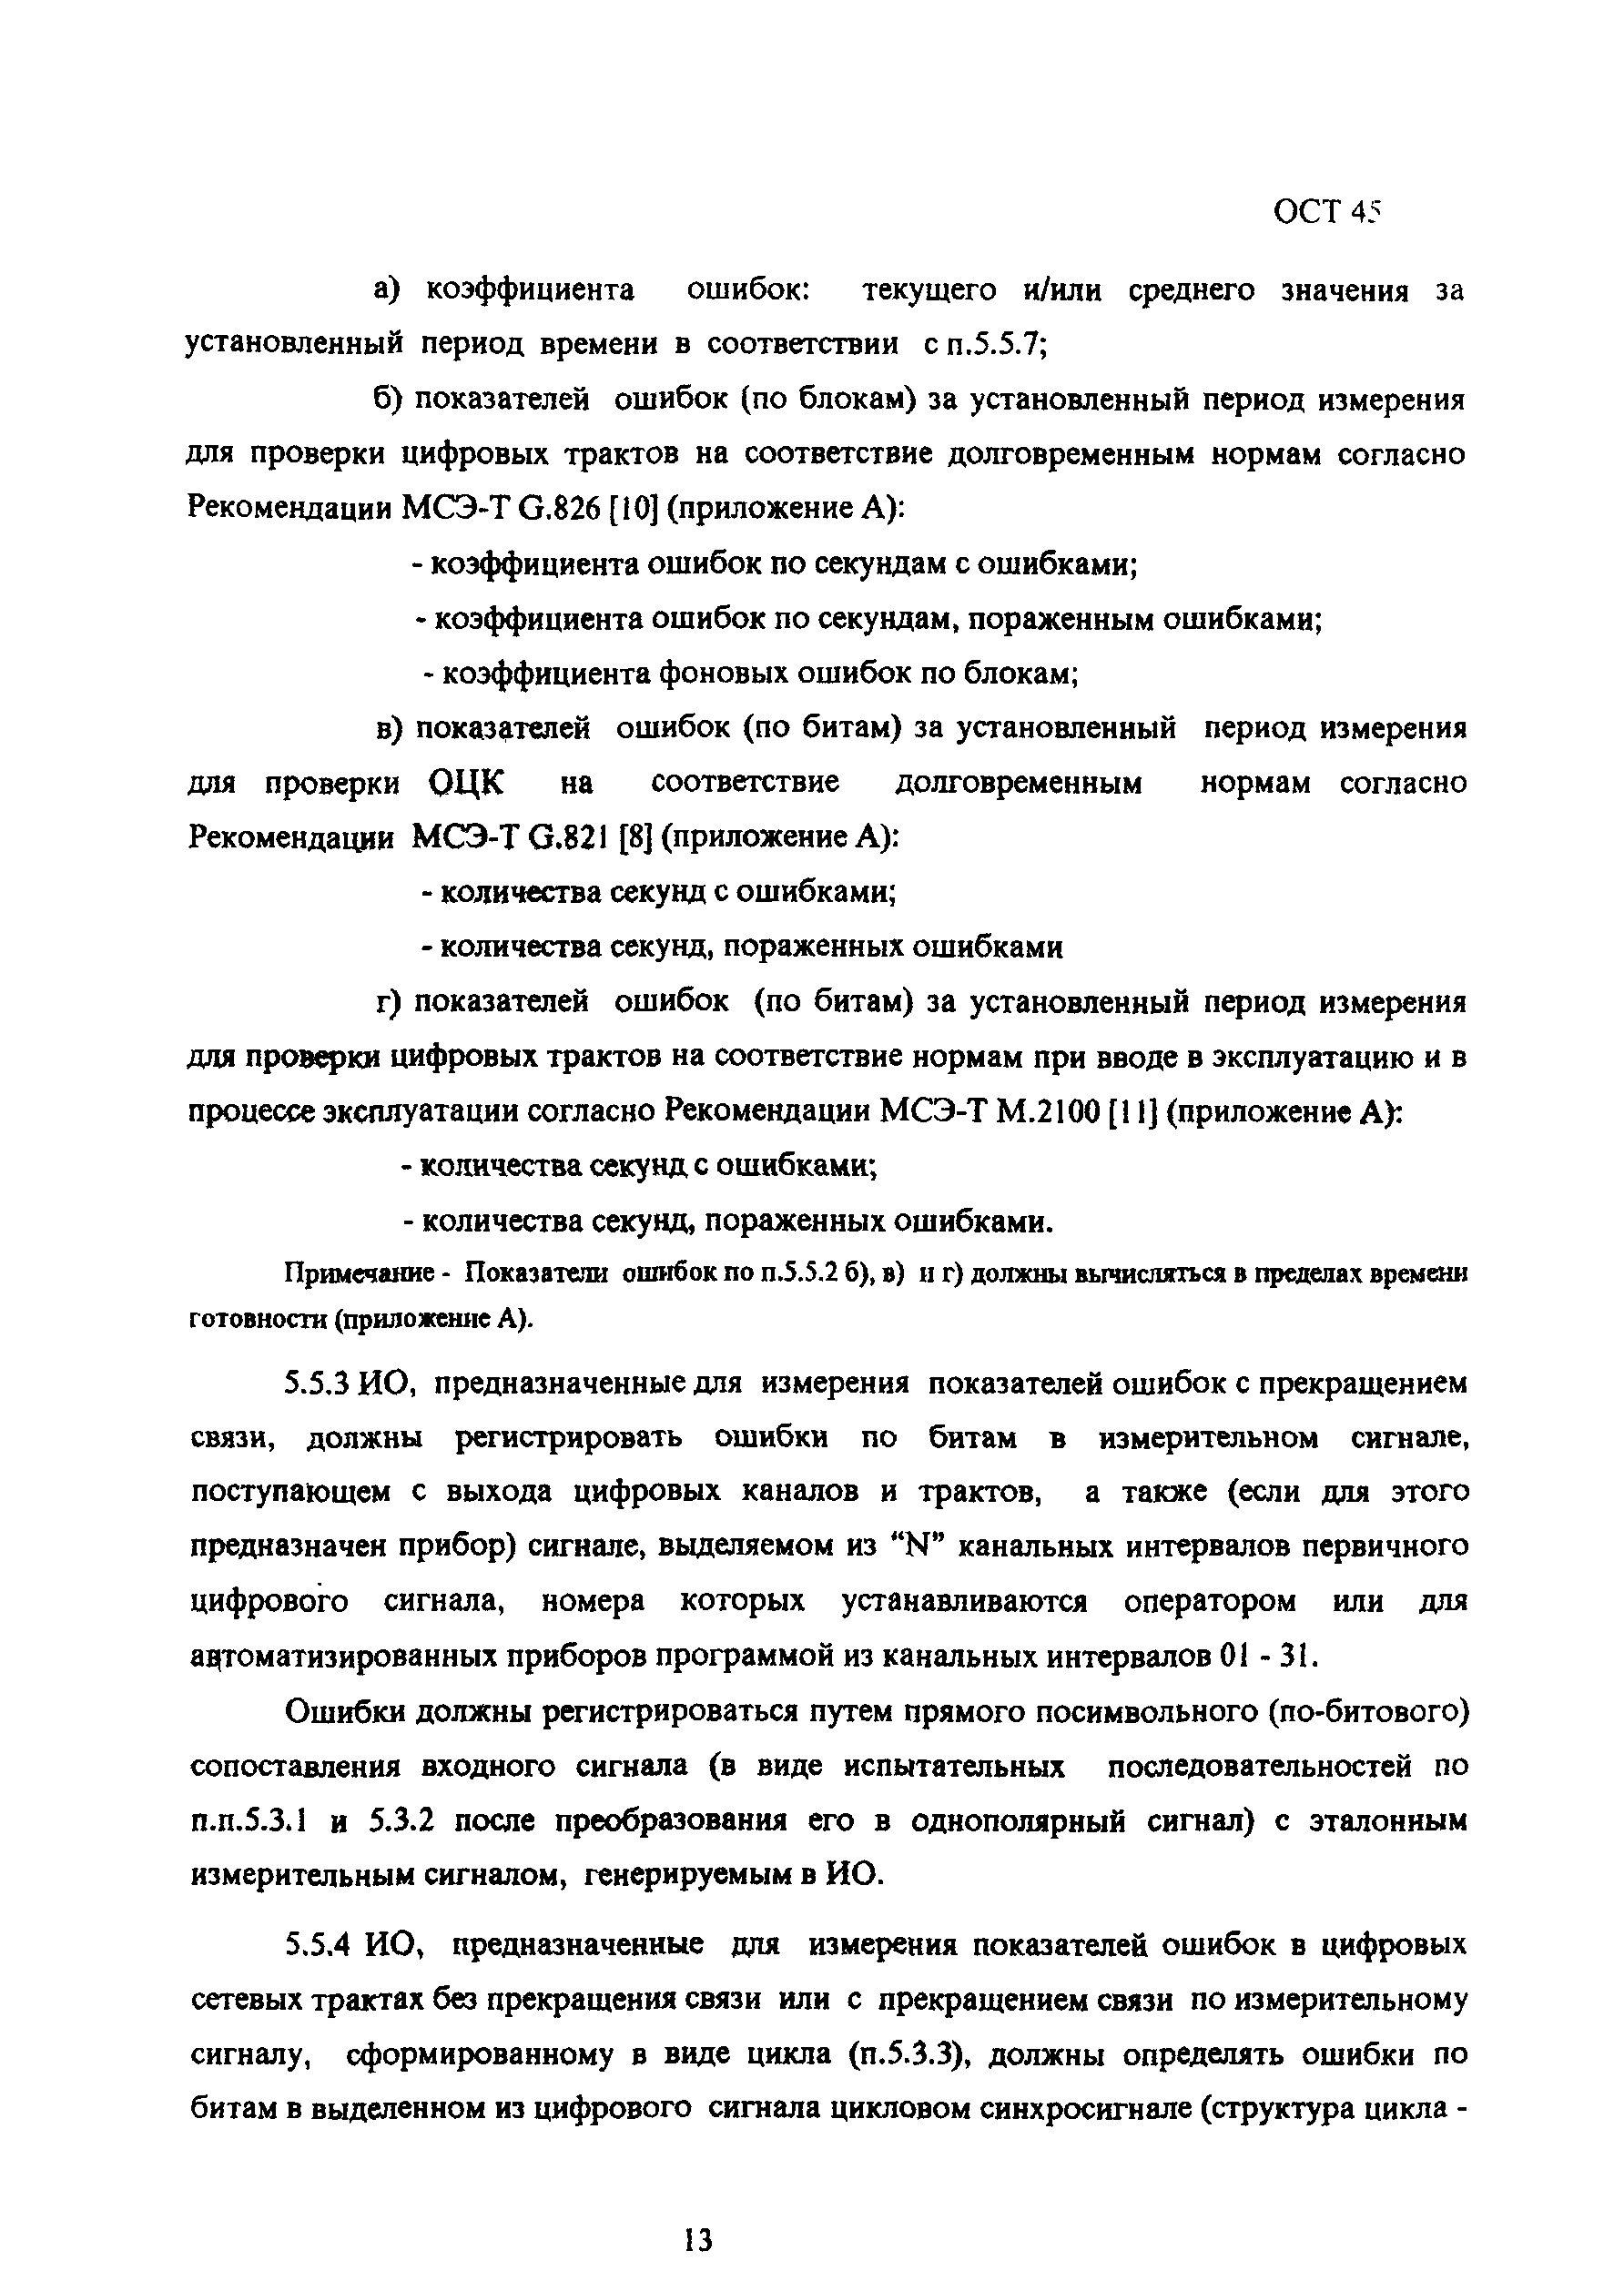 ОСТ 45.91-96